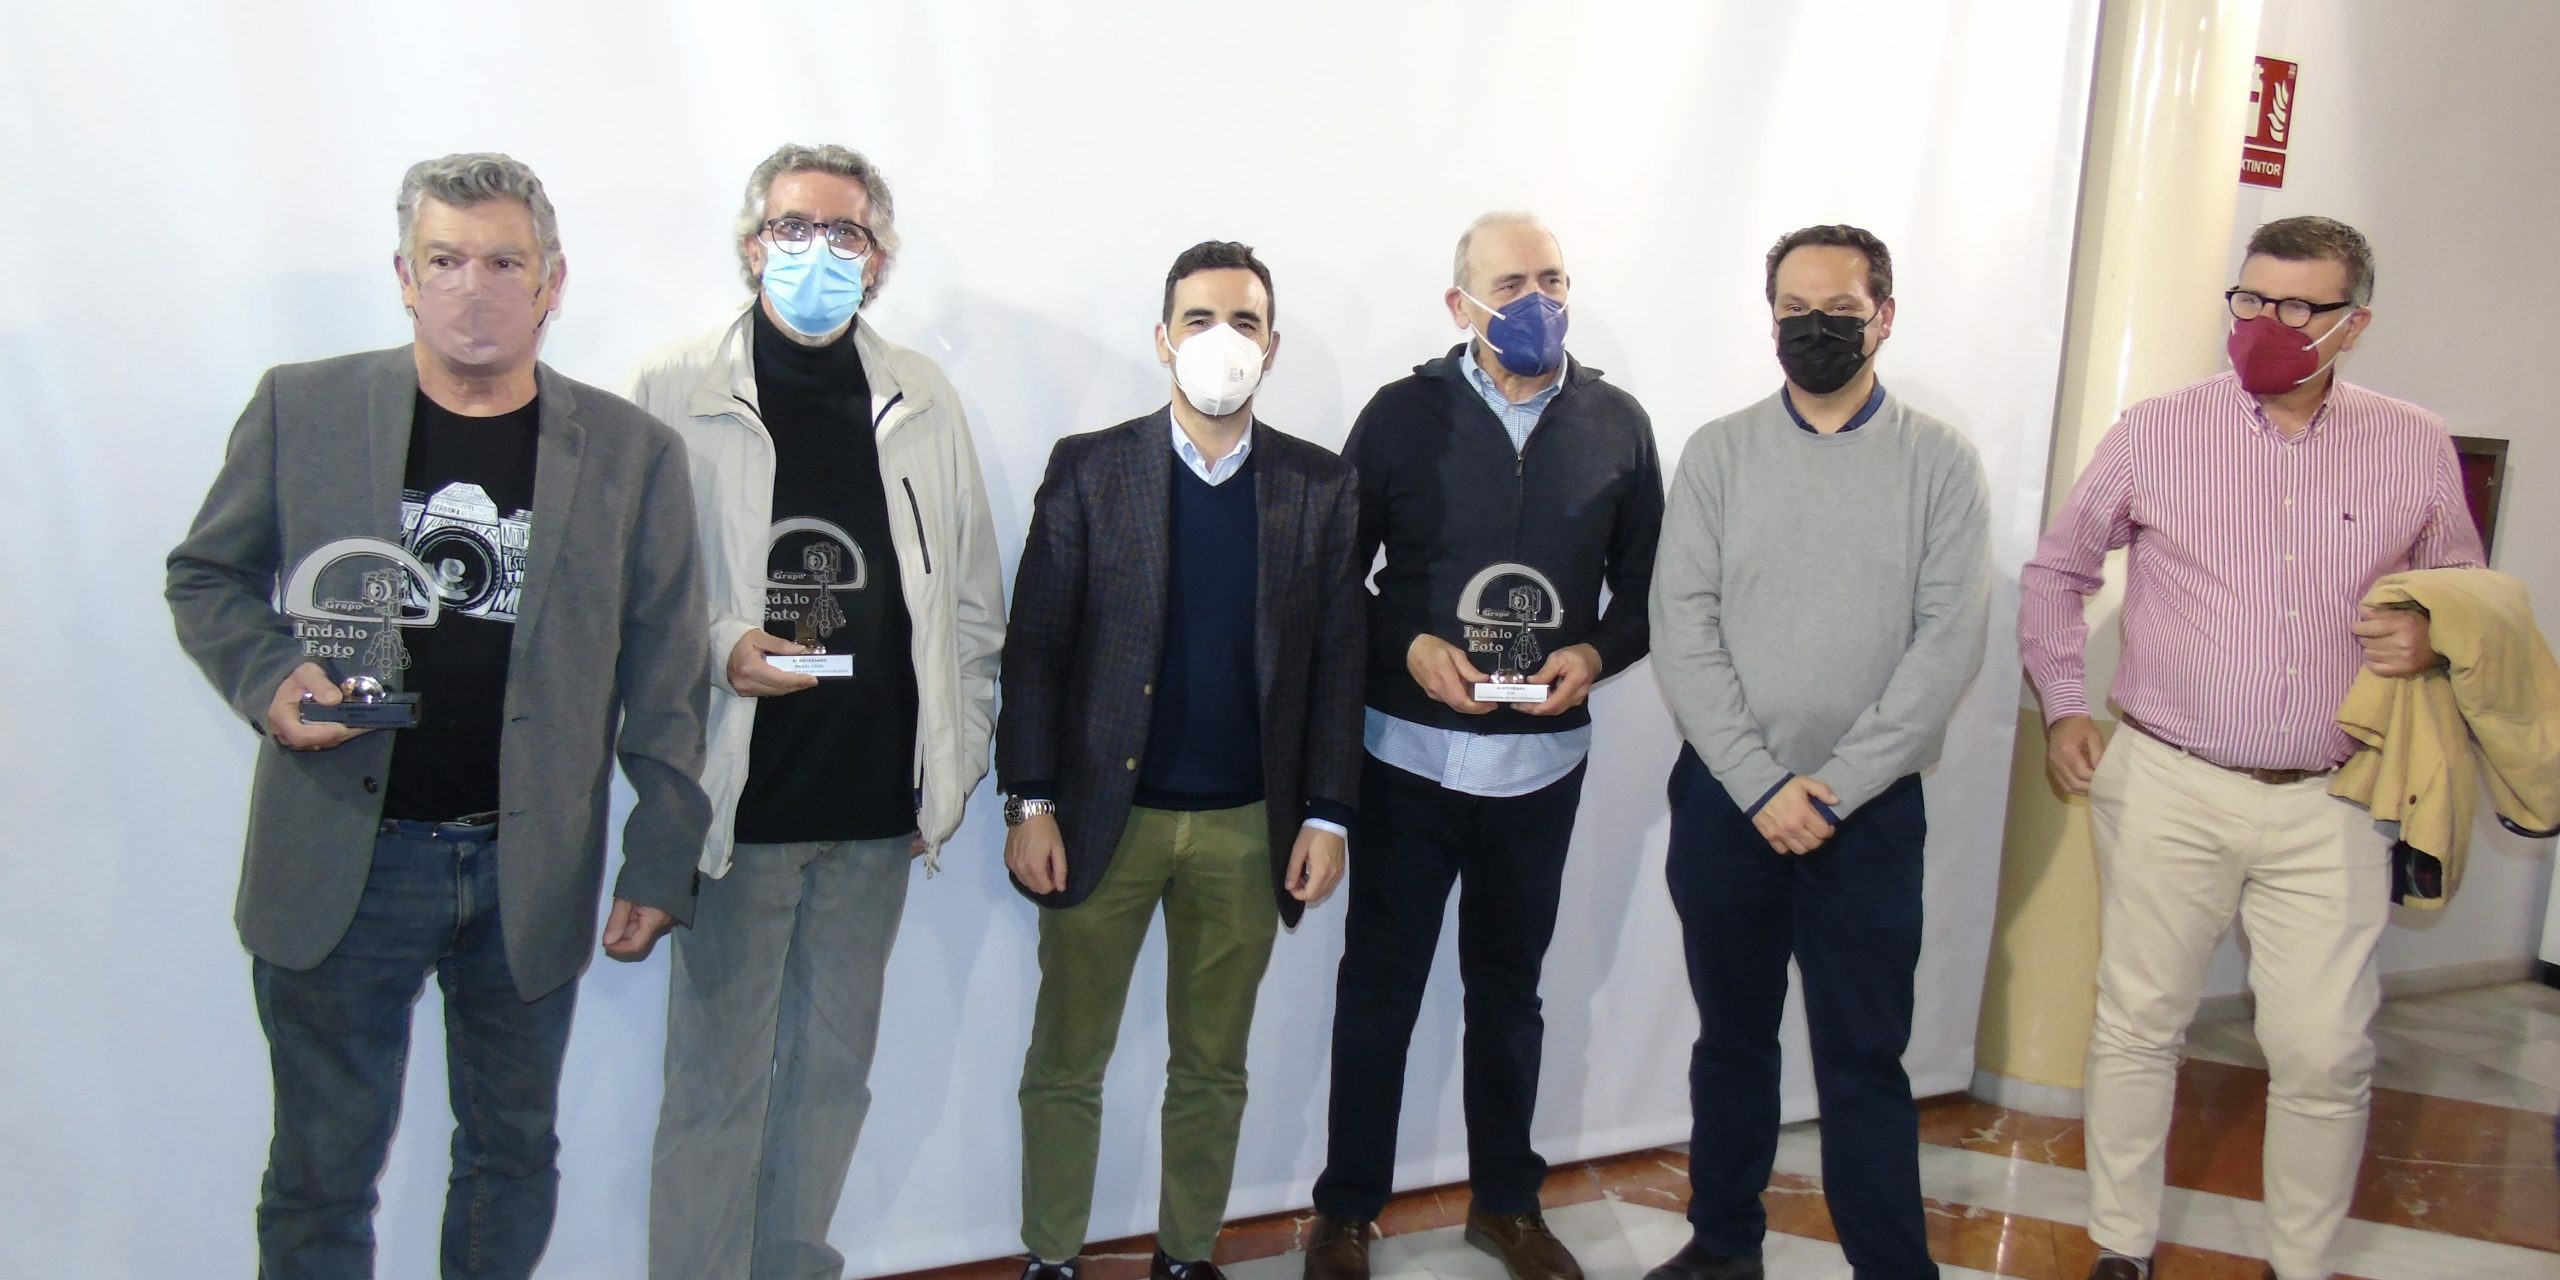 Fotografia con los ganadores del concurso indalo foto en Almería